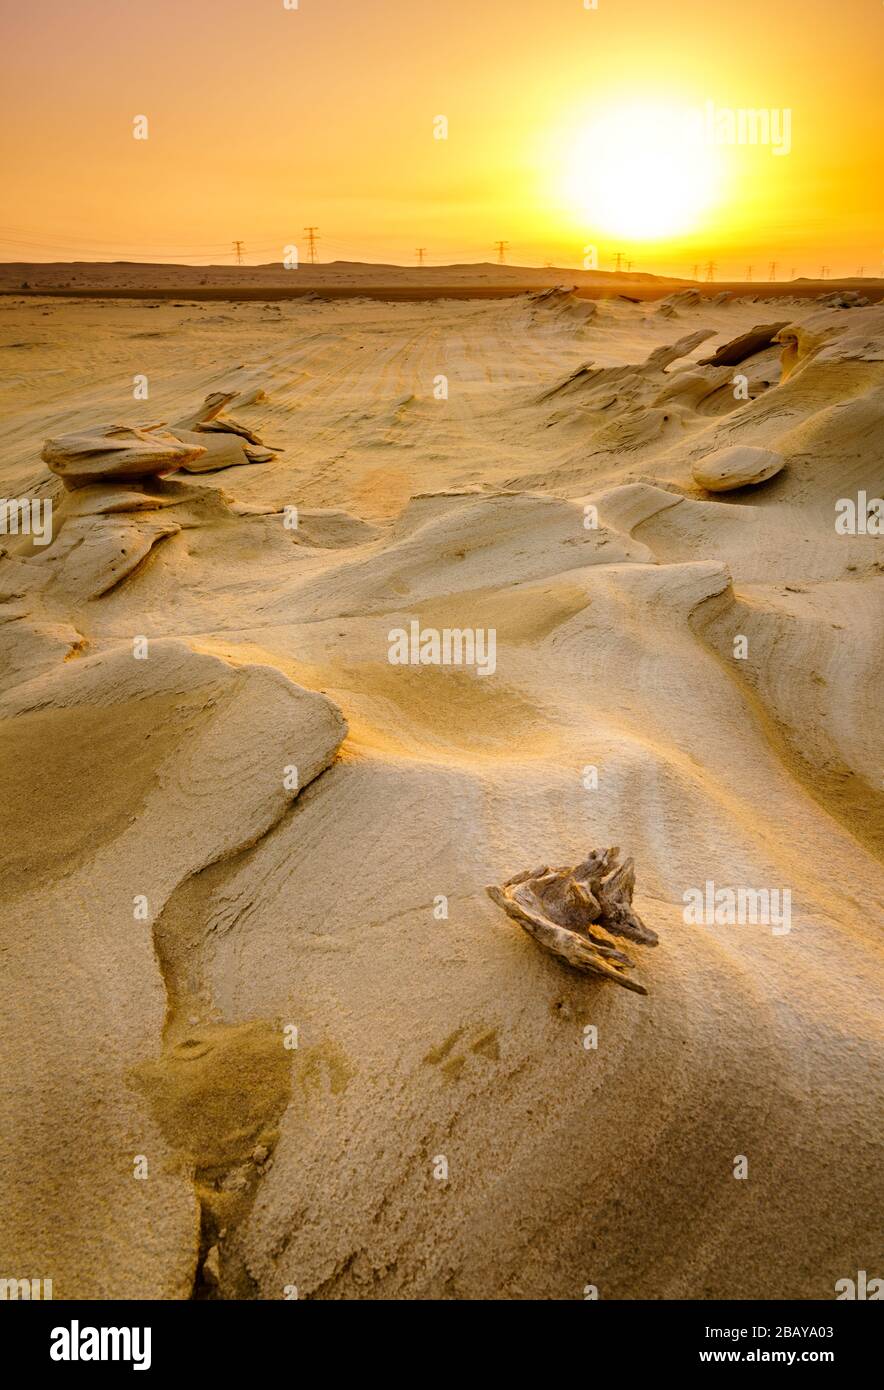 Coucher de soleil panoramique sur des formations de grès dans le désert d'Abu Dhabi aux Émirats arabes Unis Banque D'Images